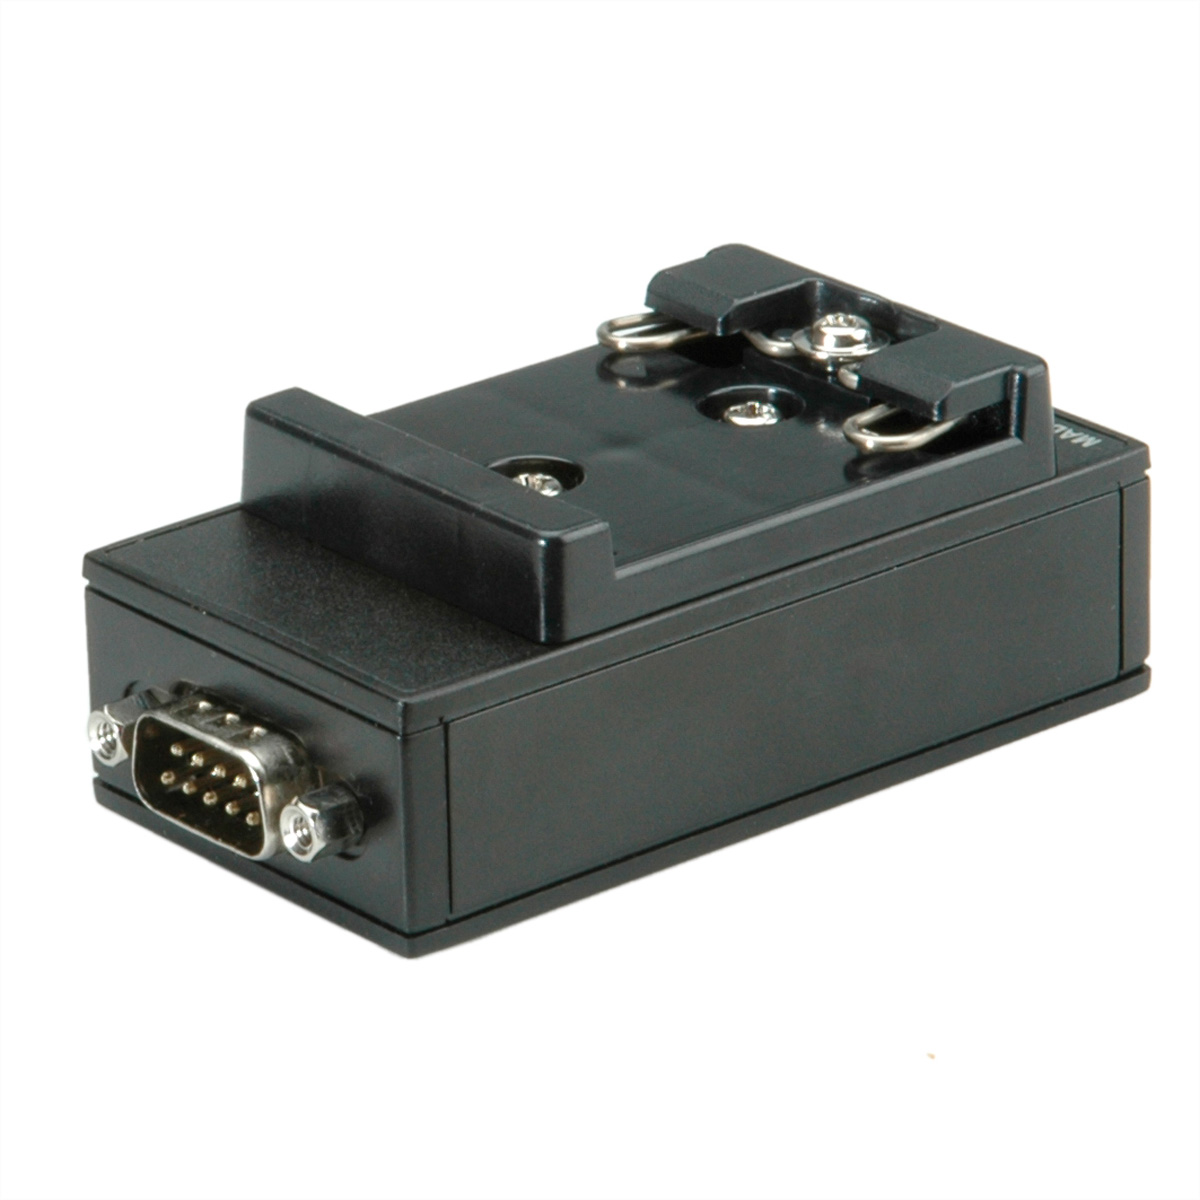 2.0 für Port DIN 1 nach USB-Seriell ROLINE Hutschiene, RS-232 Adapter Konverter USB